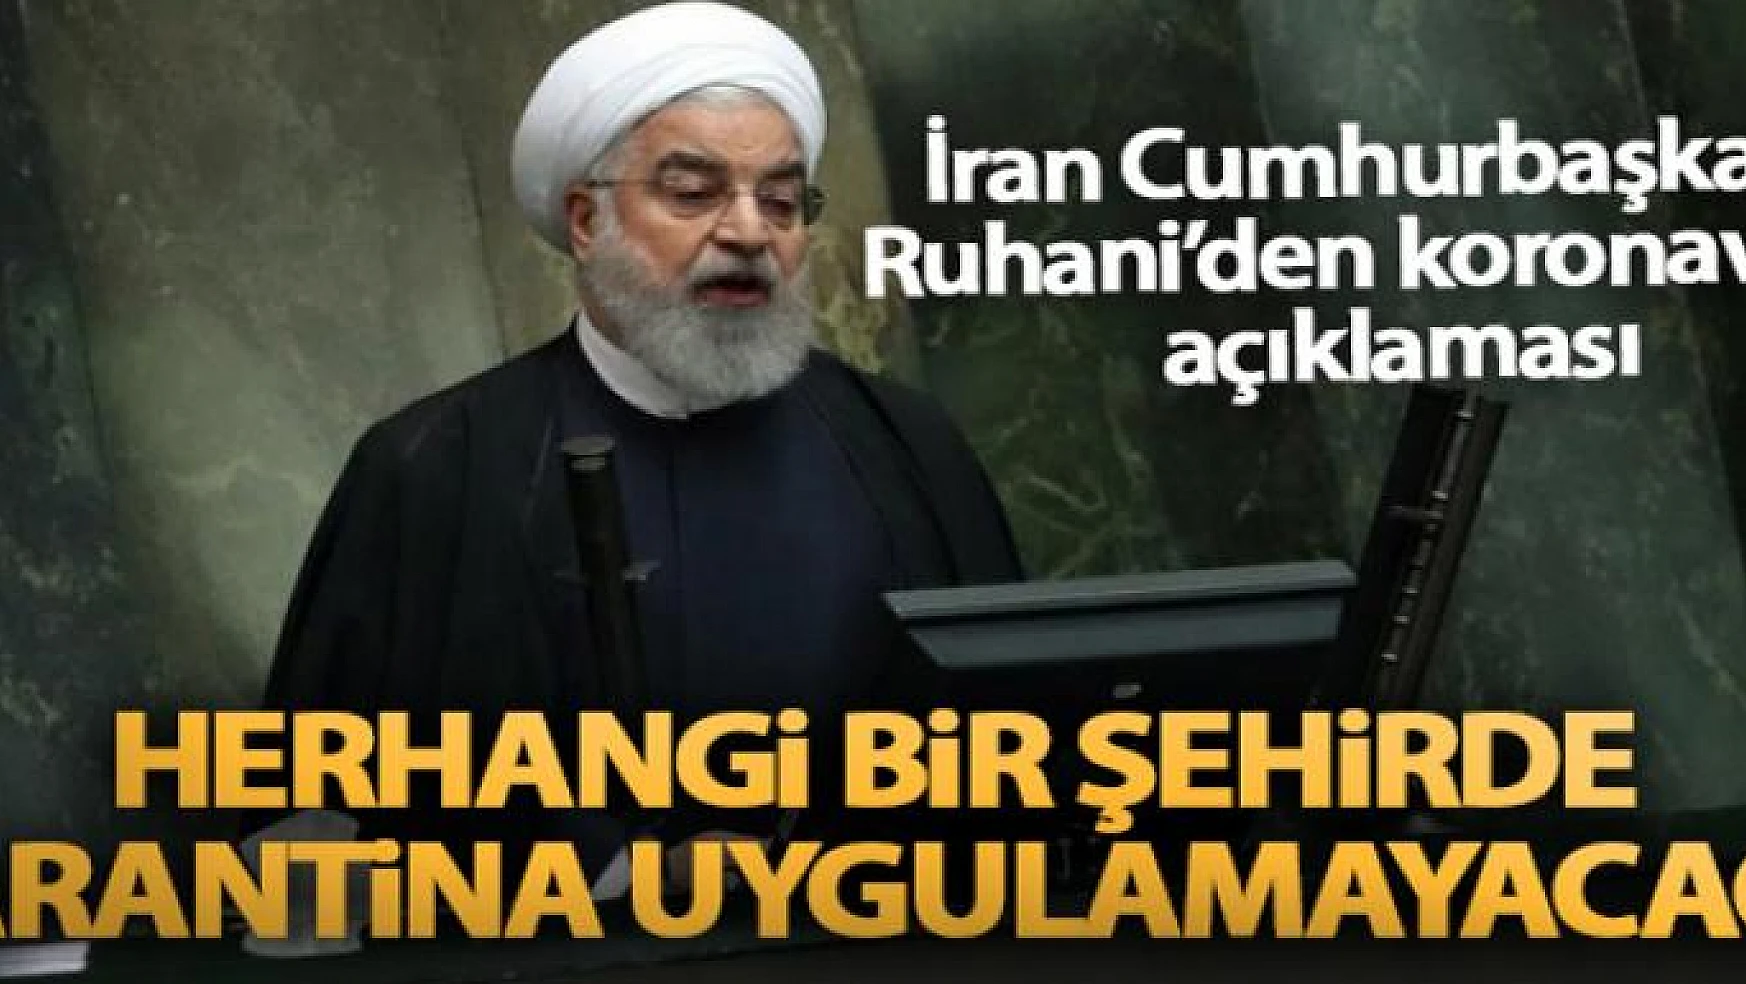 İran Cumhurbaşkanı Ruhani: 'Herhangi bir şehirde karantina uygulamayacağız'